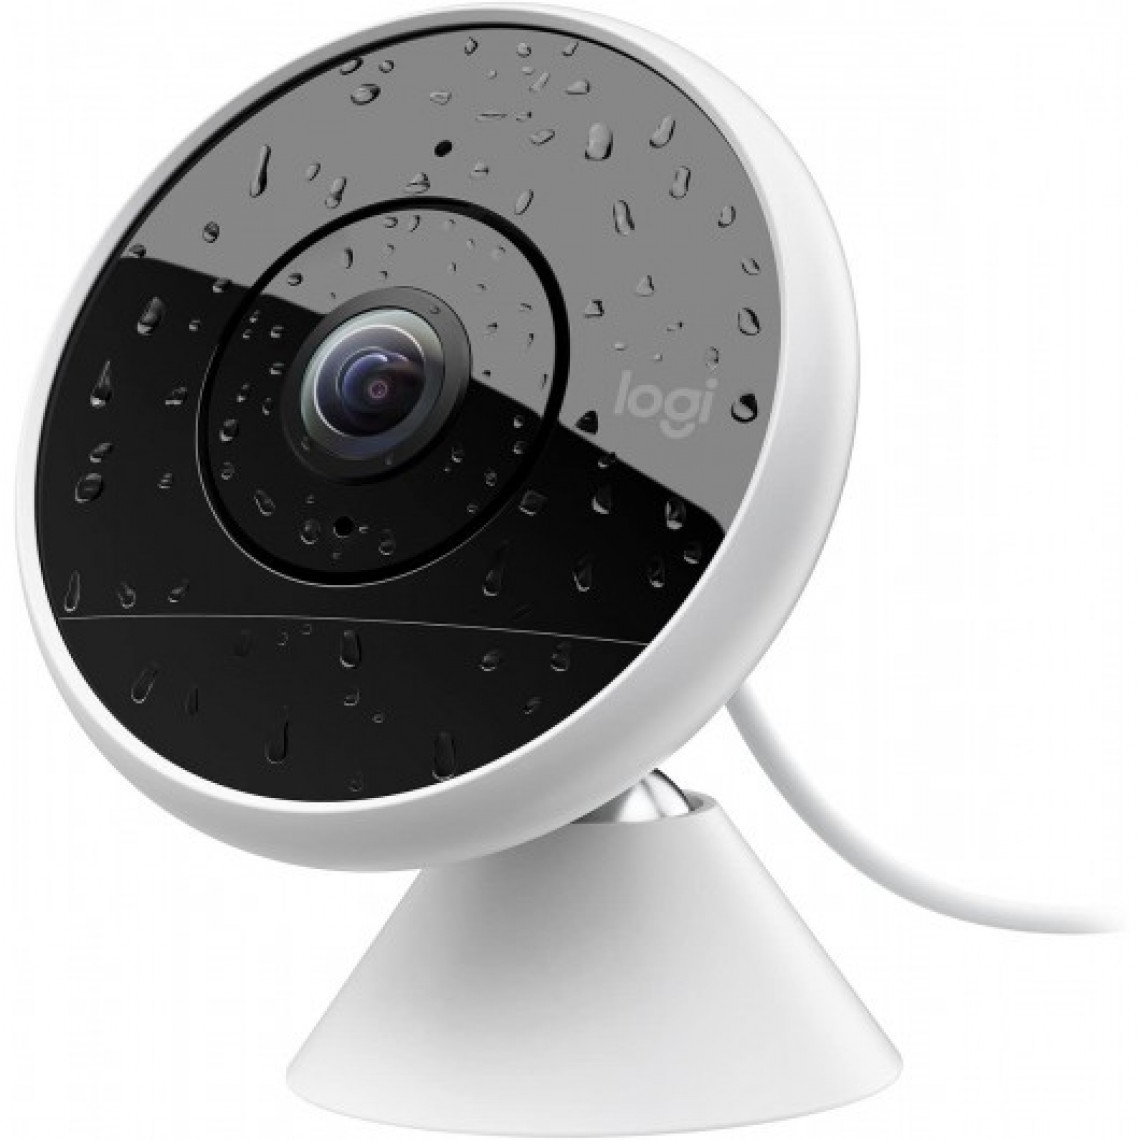 Logitech - Logitech Circle 2, la caméra de surveillance pour intérieur et extérieur - Caméra de surveillance connectée